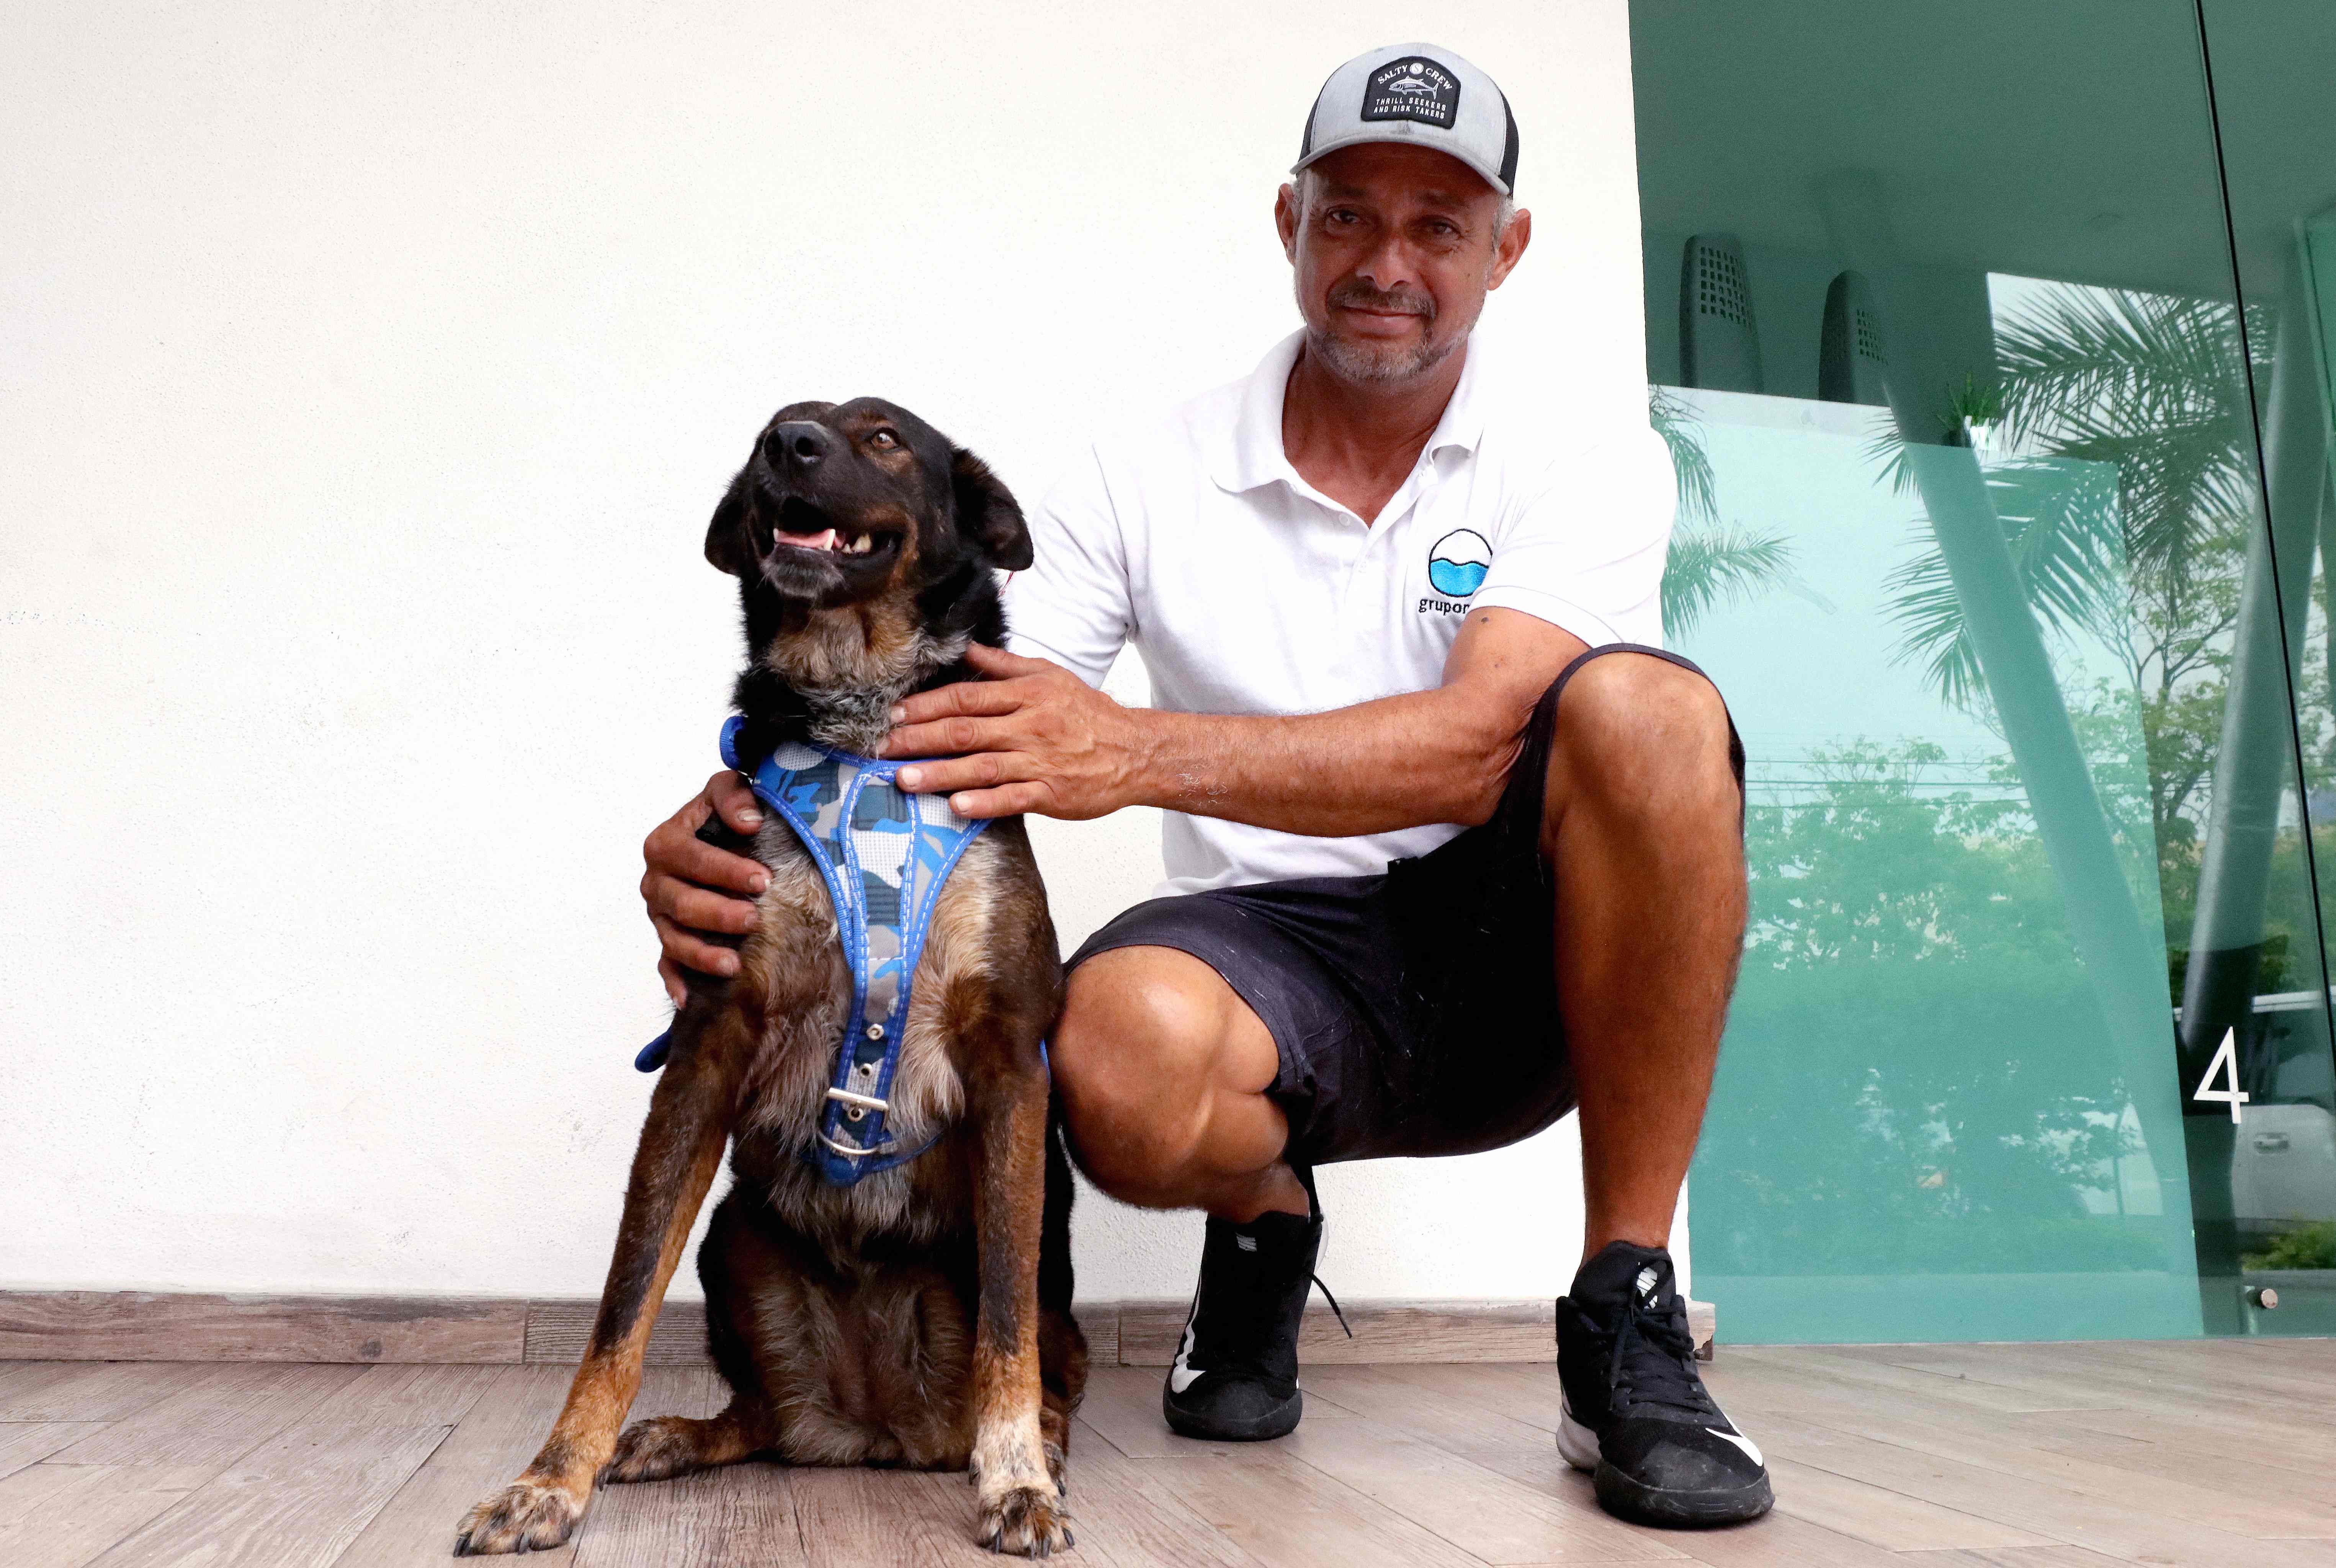 El pescador Genaro Rosales, de 48 años, miembro de la tripulación de rescate, adoptará a Bella